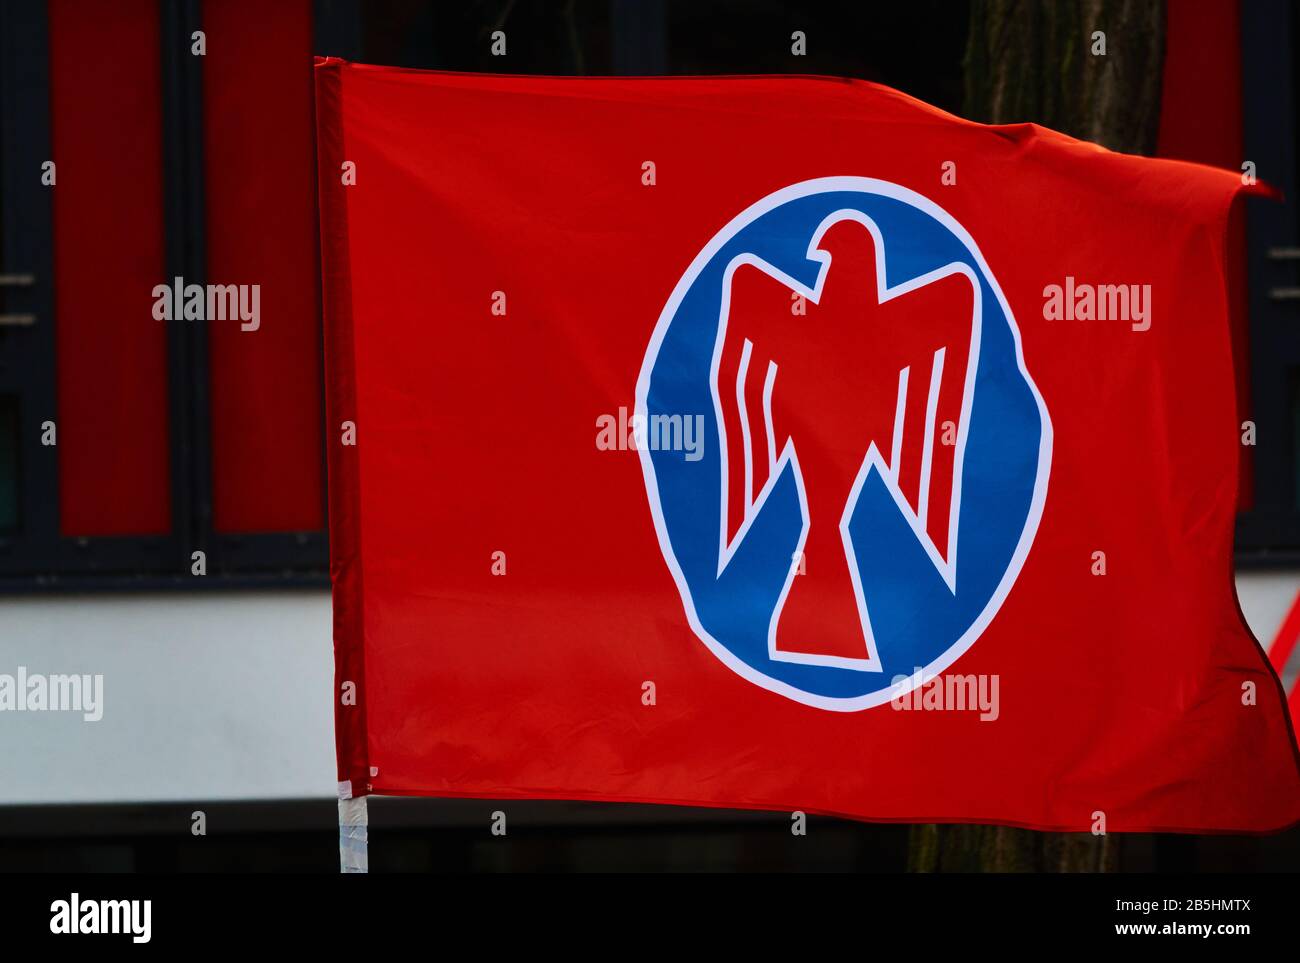 Braunschweig, 8. März 2020: Womans Day 2020, Red Flag of the Falcons, eine sozialistische Jugendorganisation am Internationalen Frauentag Stockfoto